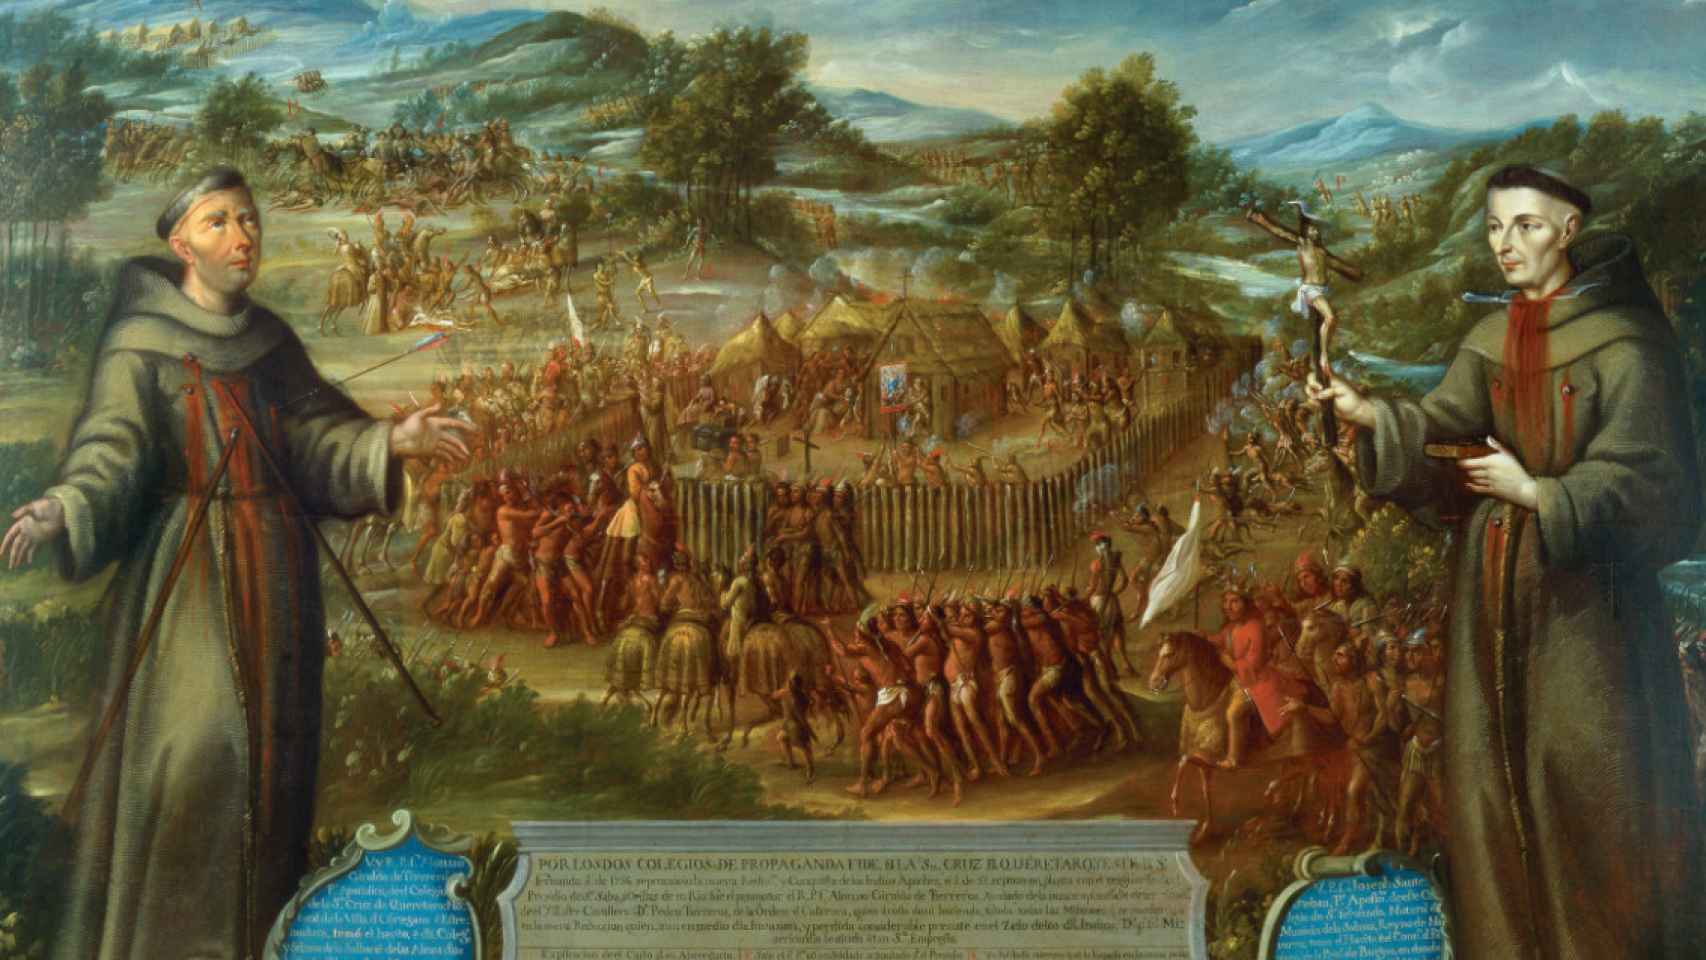 El gran 'muro de adobe' que defendió la frontera española de Norteamérica de apaches y comanches